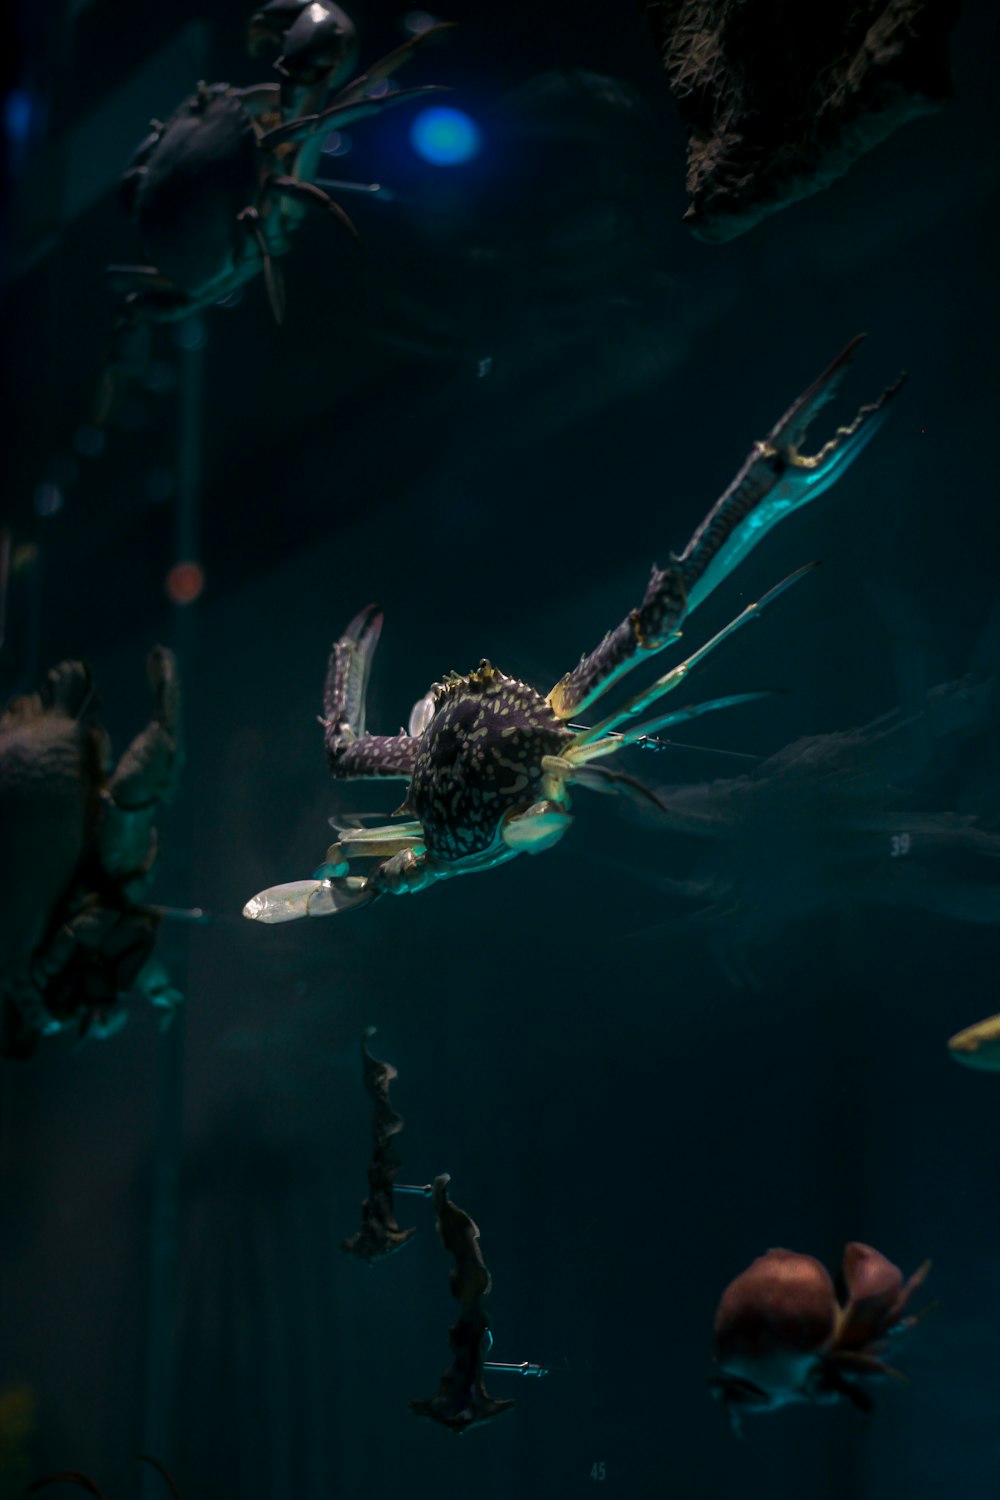 un grupo de criaturas marinas flotando en el agua